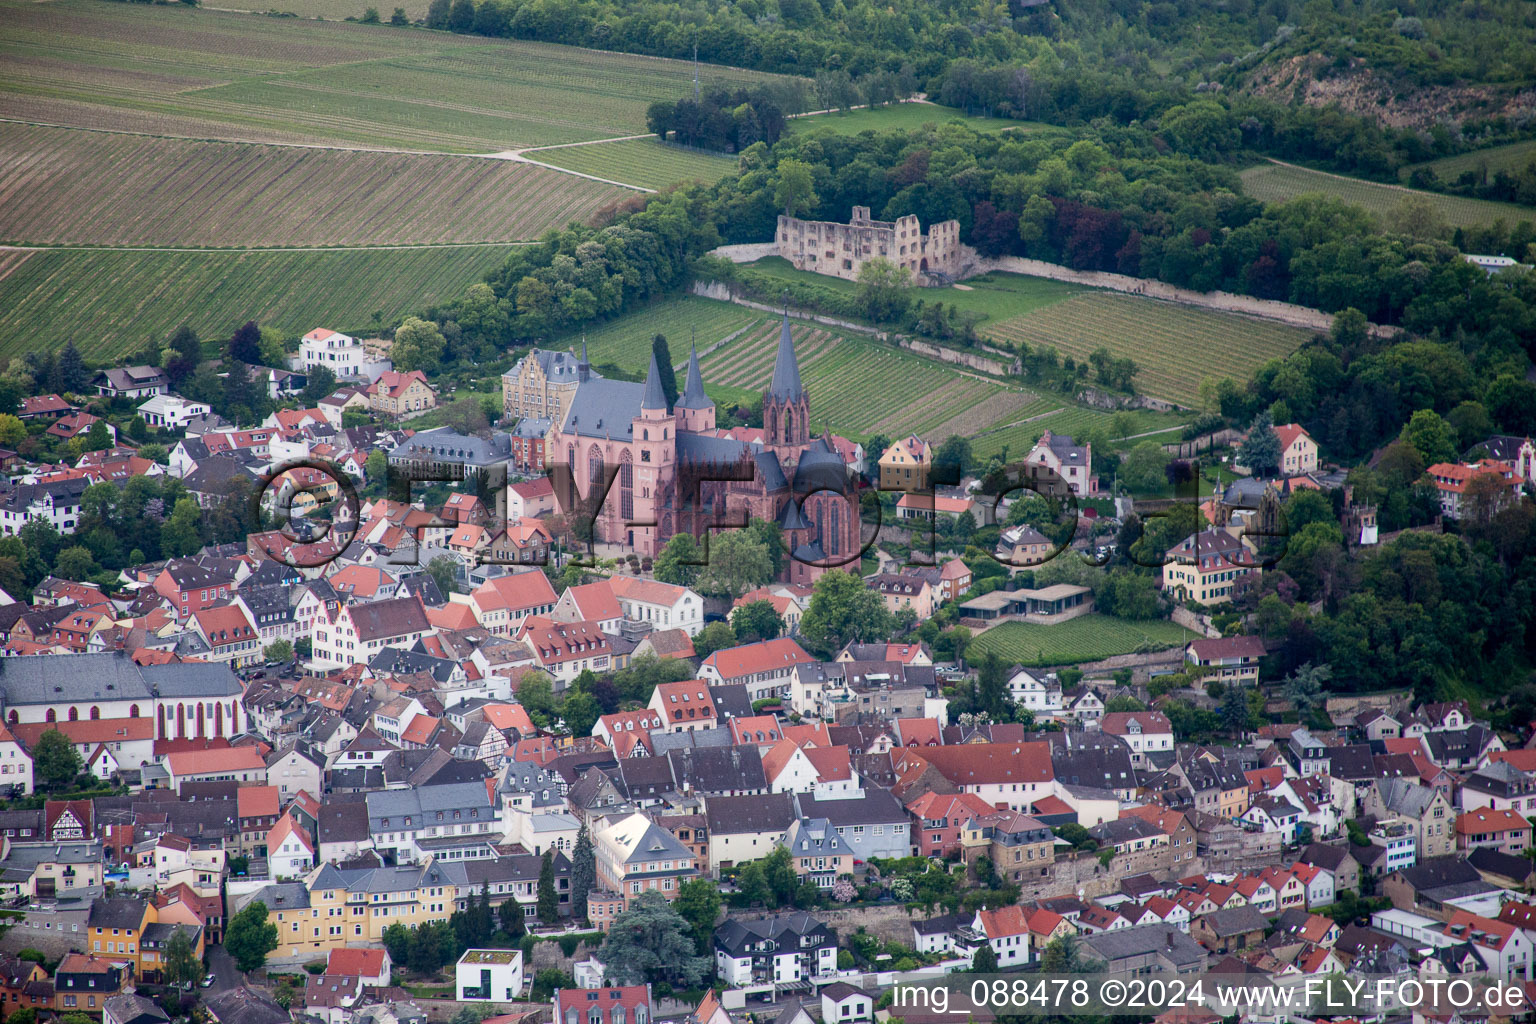 Oppenheim im Bundesland Rheinland-Pfalz, Deutschland aus der Luft betrachtet